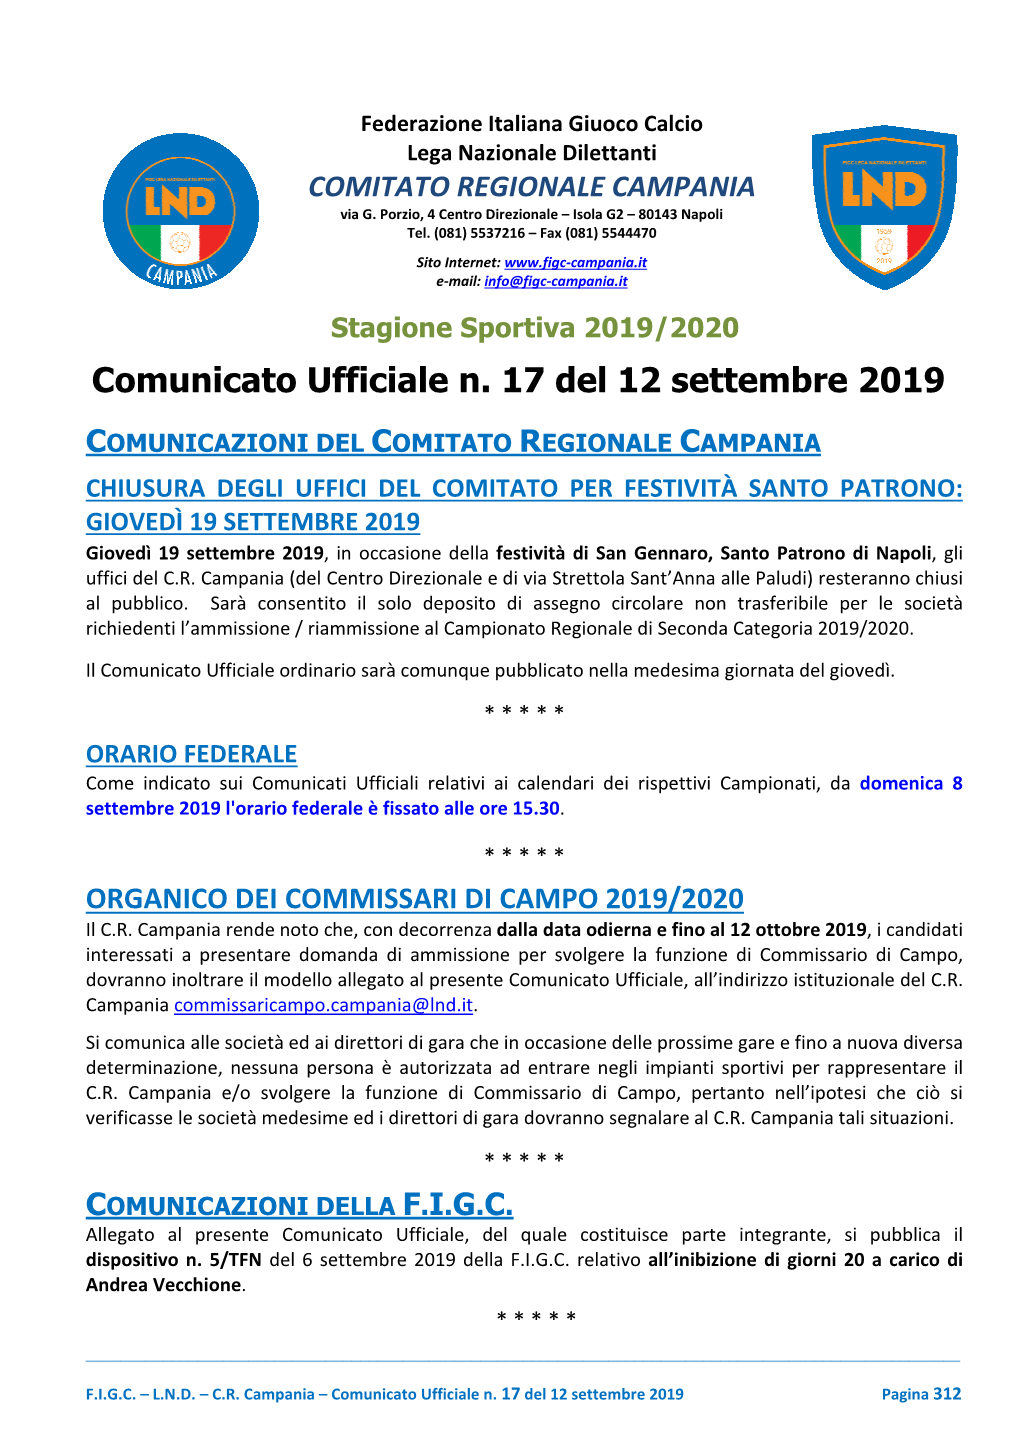 Comunicato Ufficiale N. 17 Del 12 Settembre 2019